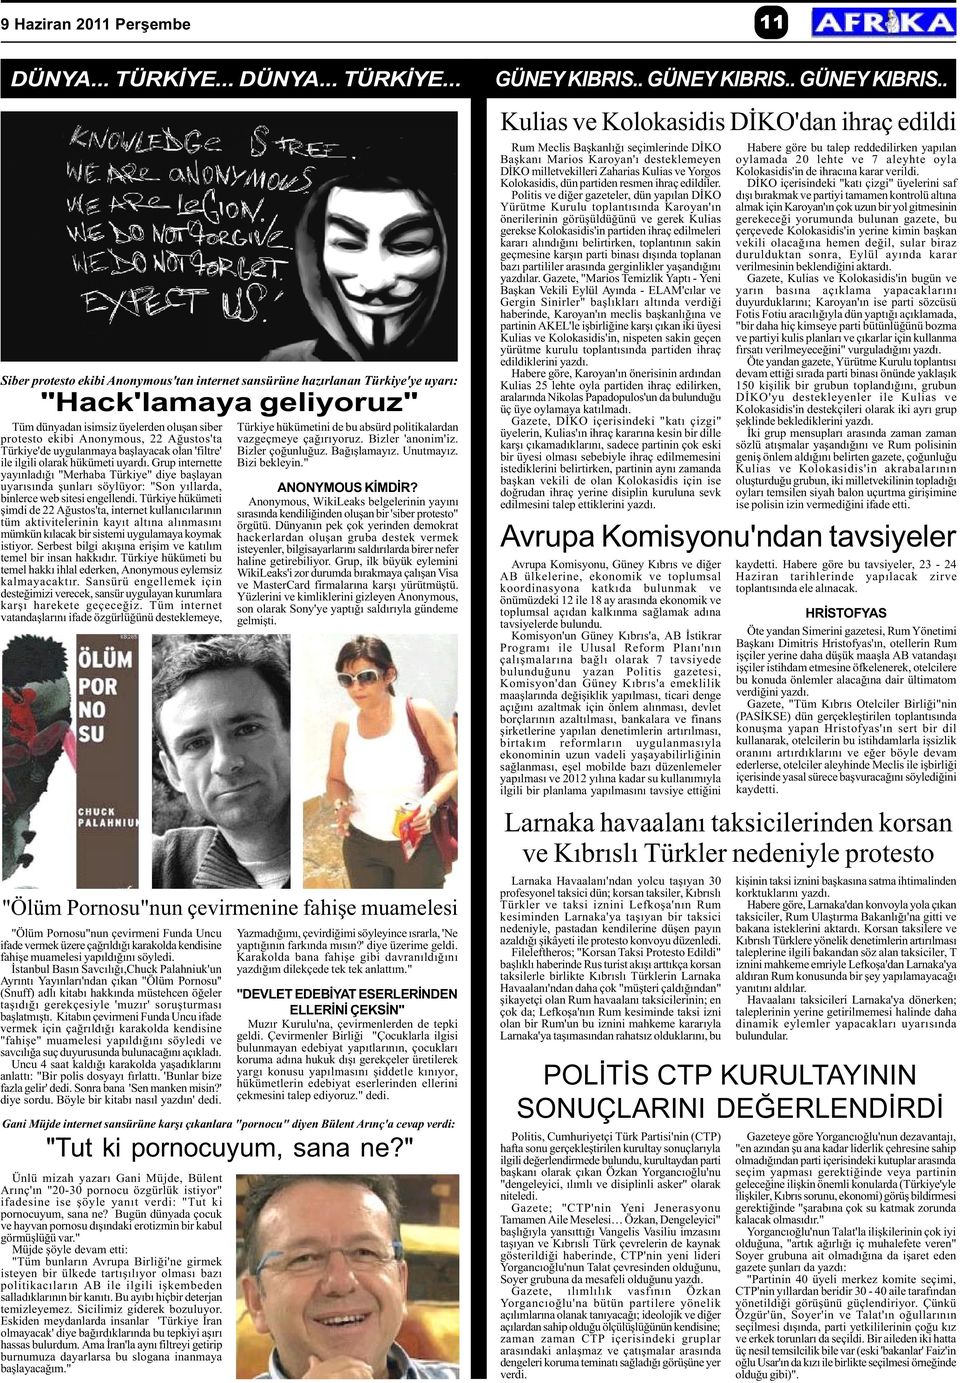 .. Siber protesto ekibi Anonymous'tan internet sansürüne hazýrlanan Türkiye'ye uyarý: "Hack'lamaya geliyoruz" Tüm dünyadan isimsiz üyelerden oluþan siber protesto ekibi Anonymous, 22 Aðustos'ta